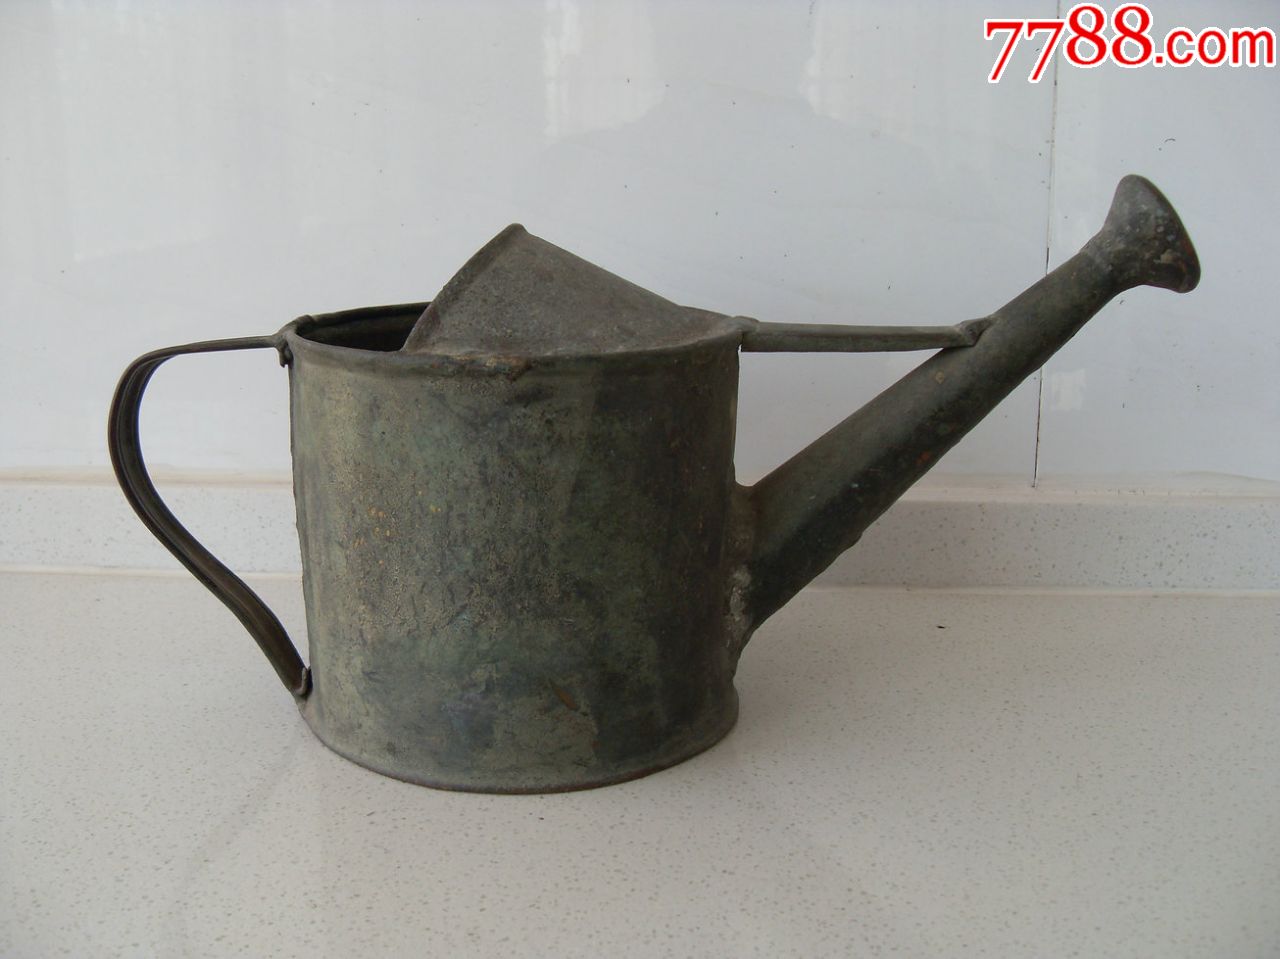 【怀旧经典品种】民国老古董铜喷水壶!